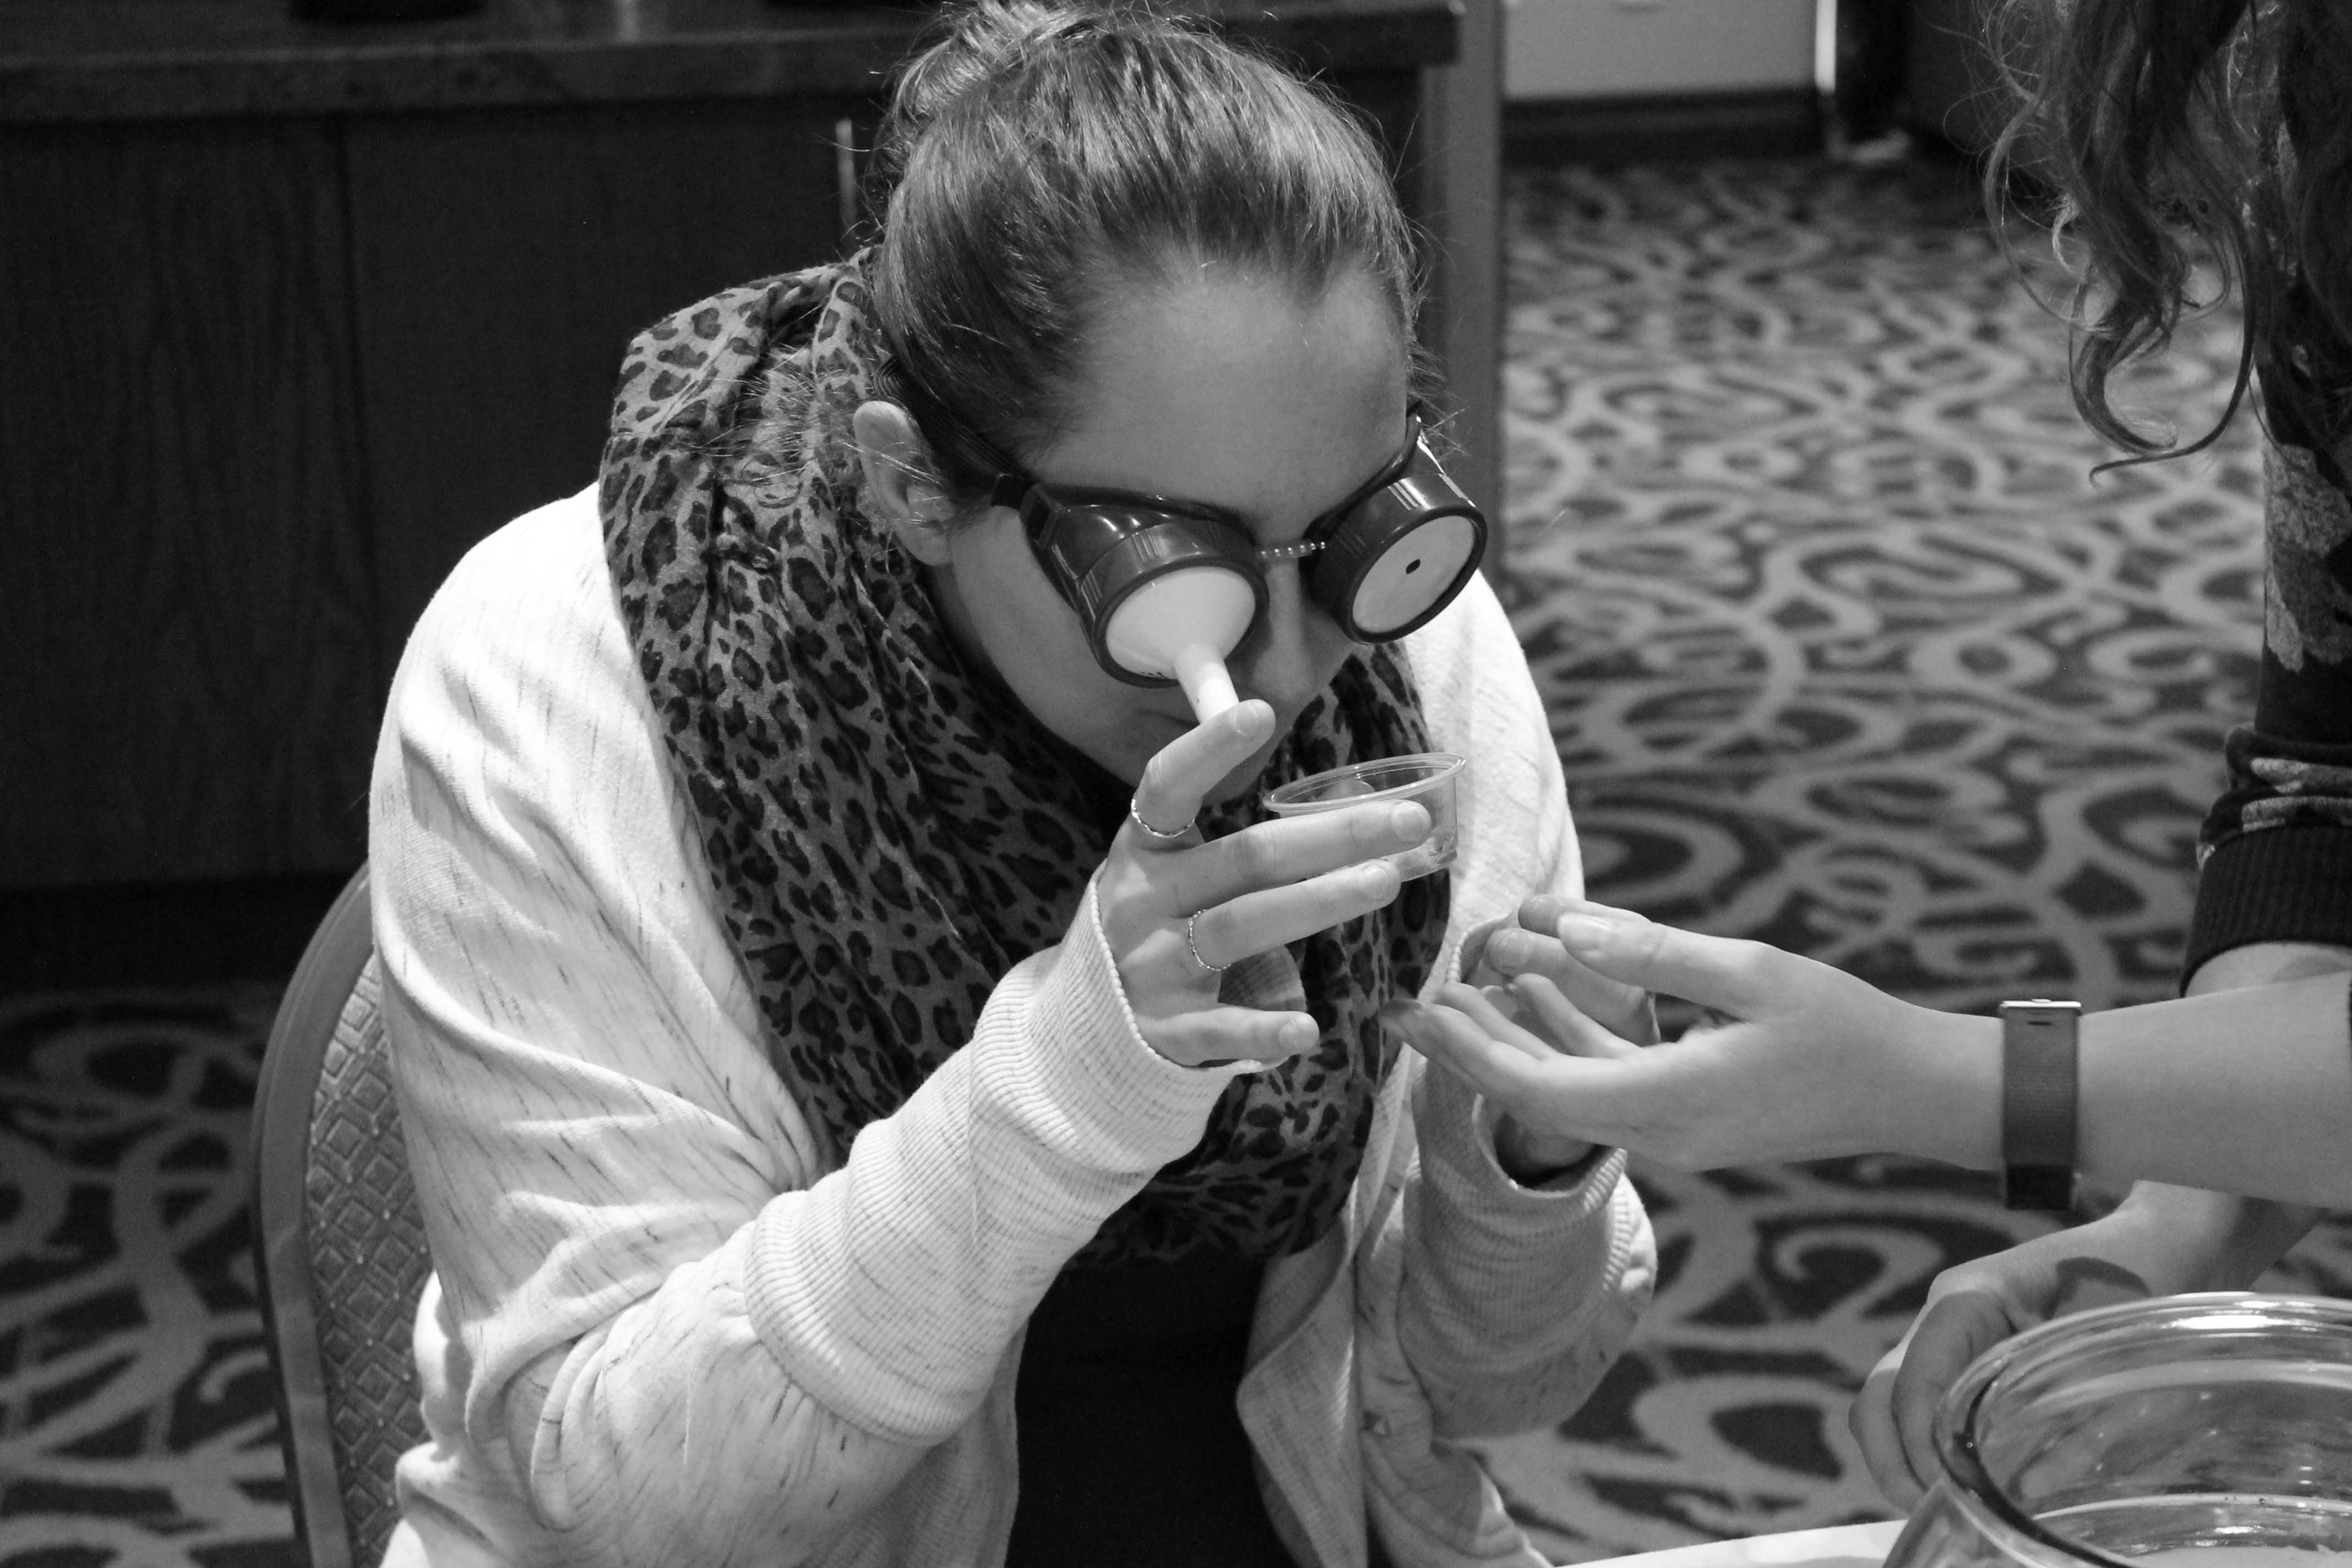 Une photo en noir et blanc d’une jeune femme qui participe à un exercice de formation par simulation. Elle examine un objet en portant des lunettes de simulation. Les lunettes l’aident à comprendre l’impact fonctionnel de la déficience visuelle ou de la basse vision.